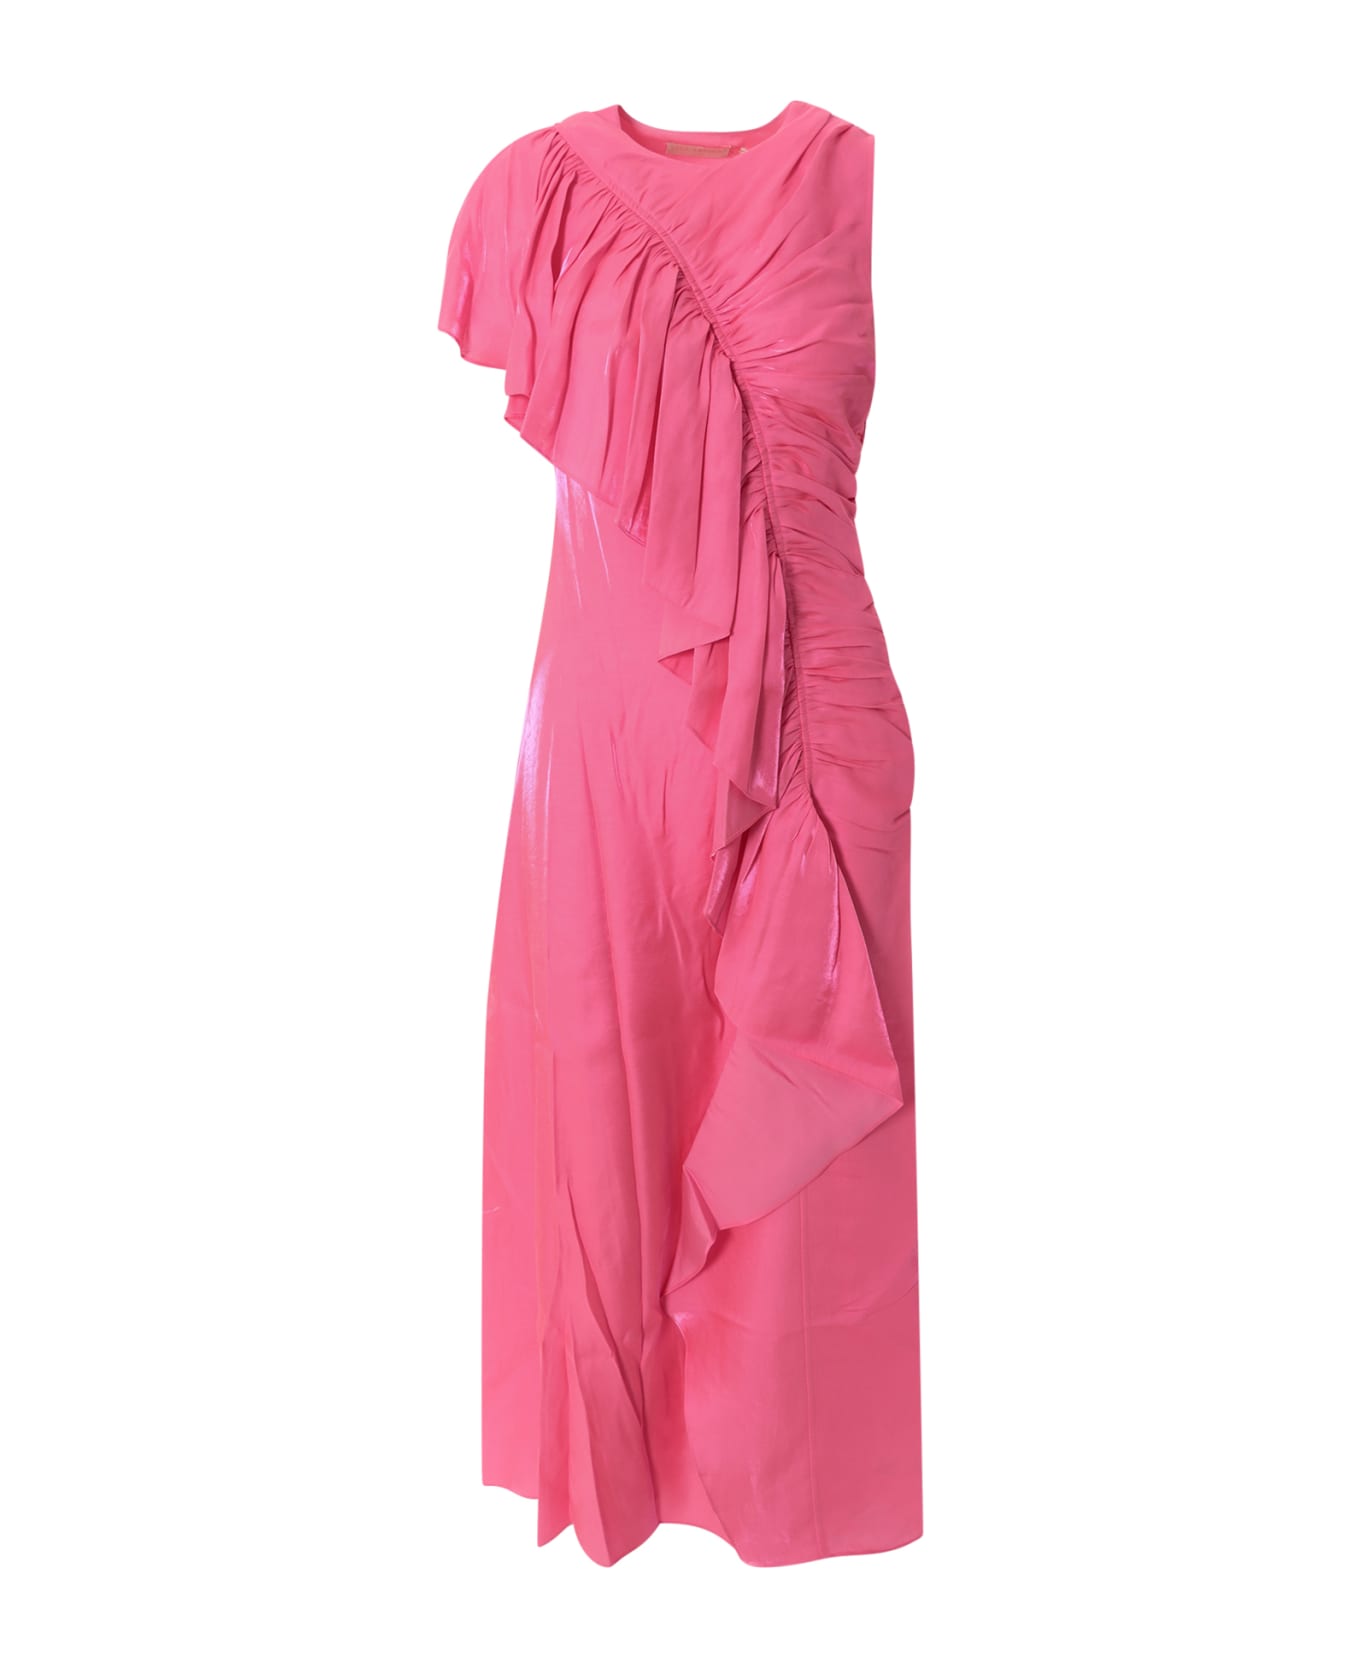 Ulla Johnson Lali Dress - Pink